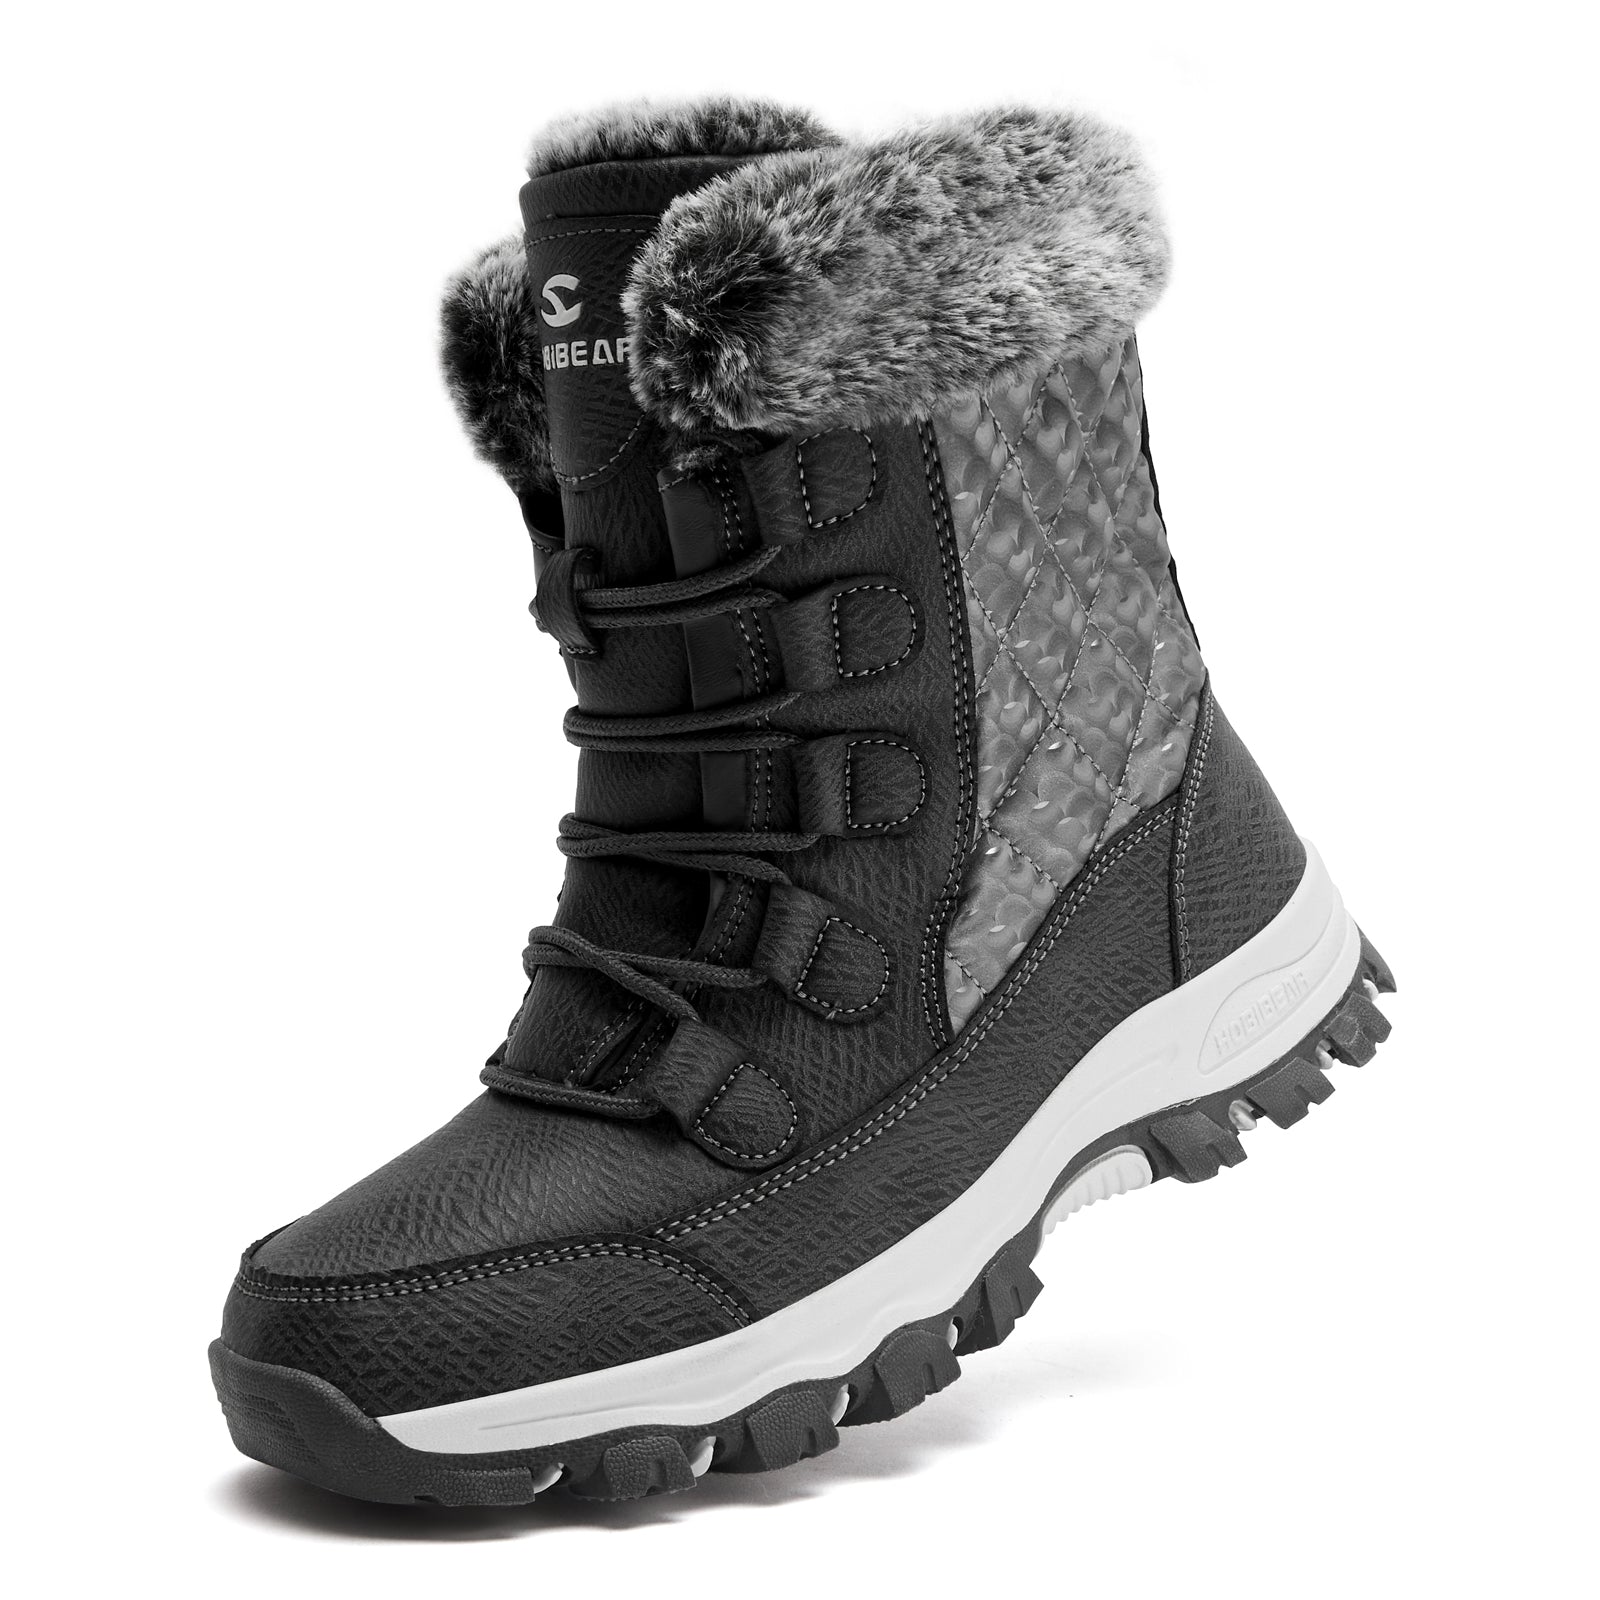 Women High Snow Boots AW3778